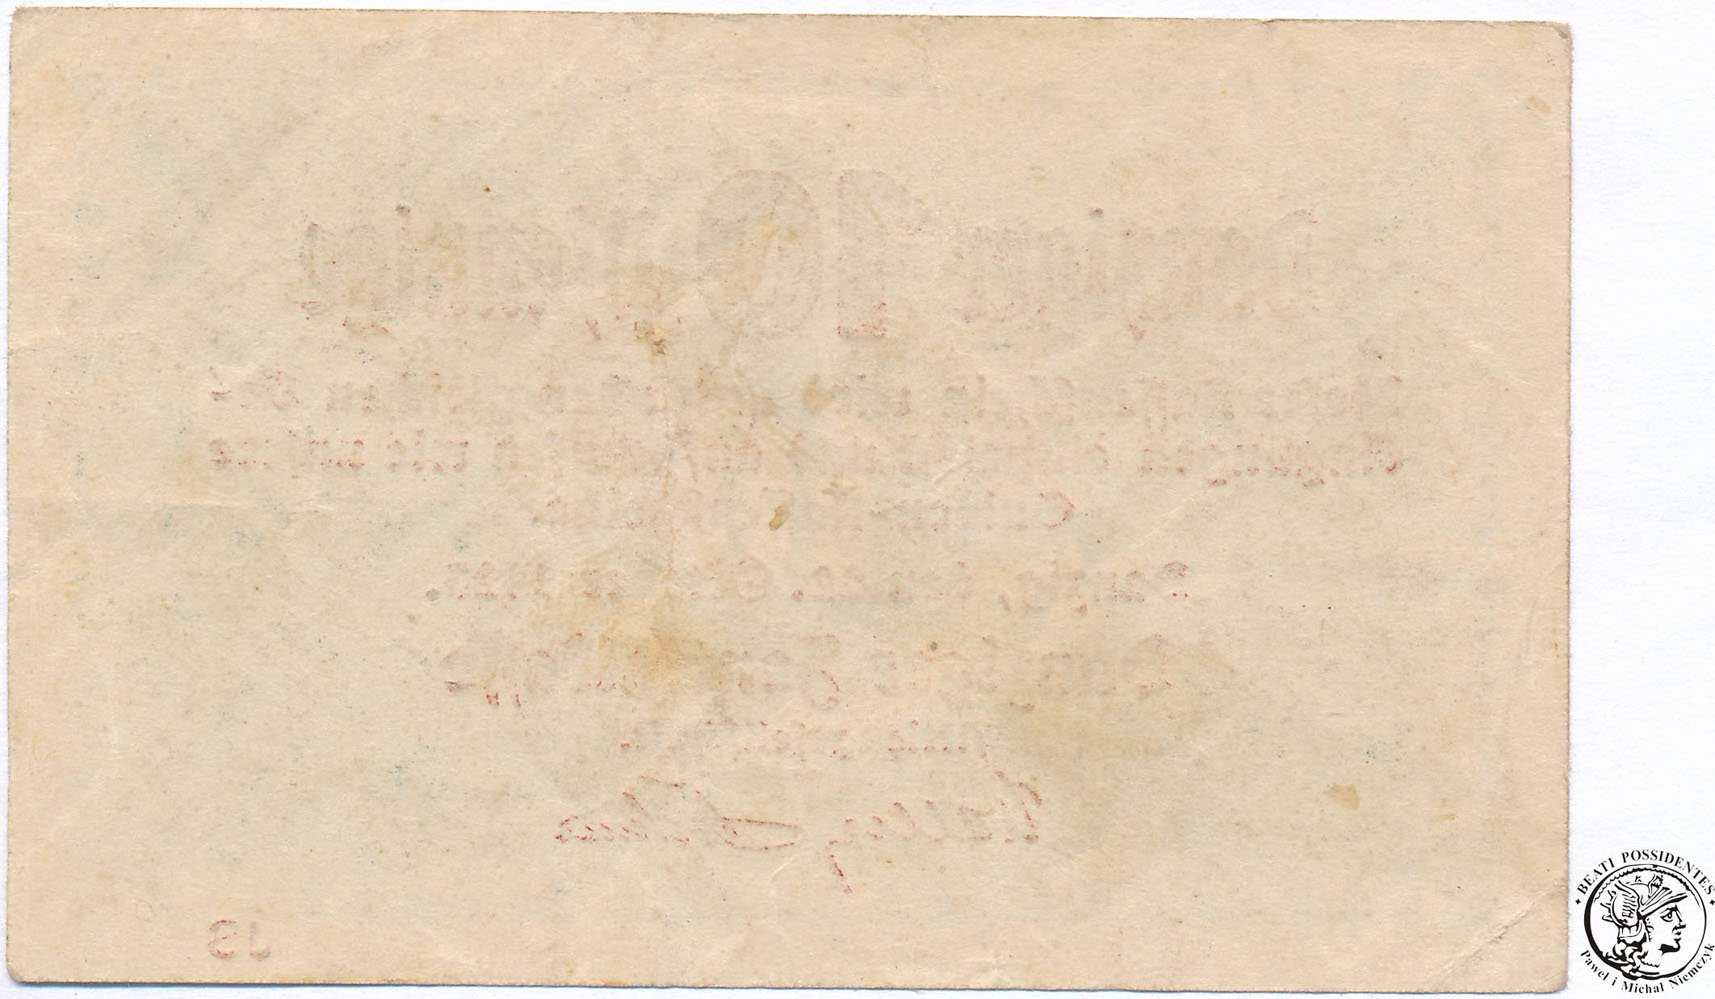 Gdańsk banknot 10 fenigów 1923 st. 3-